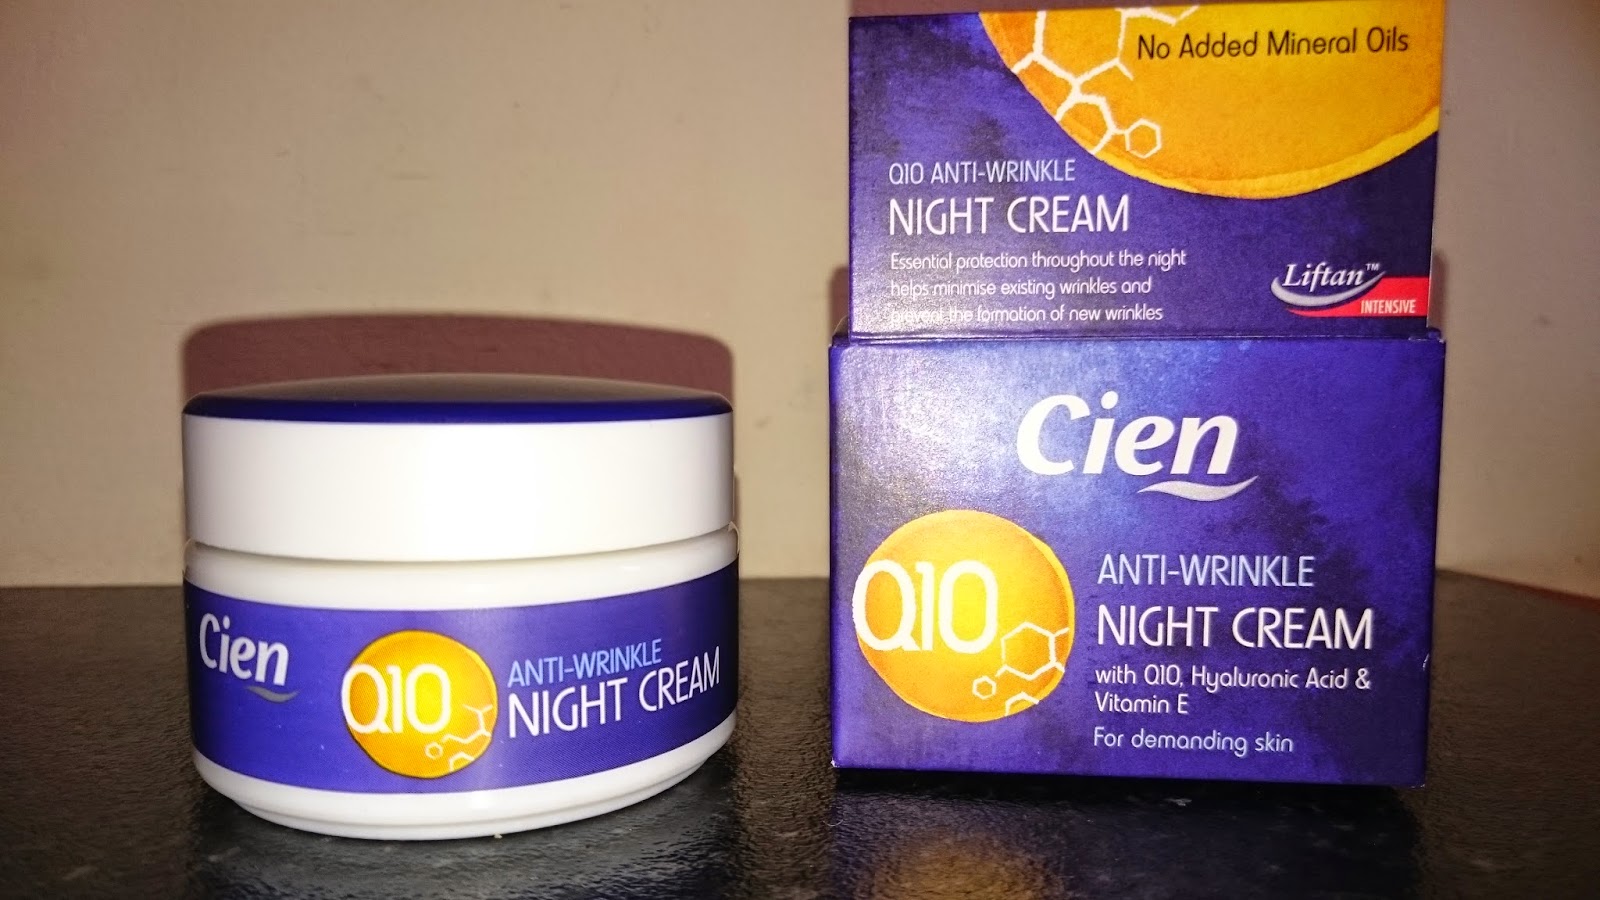 q10 anti wrinkle night cream cien allegro anti aging krém